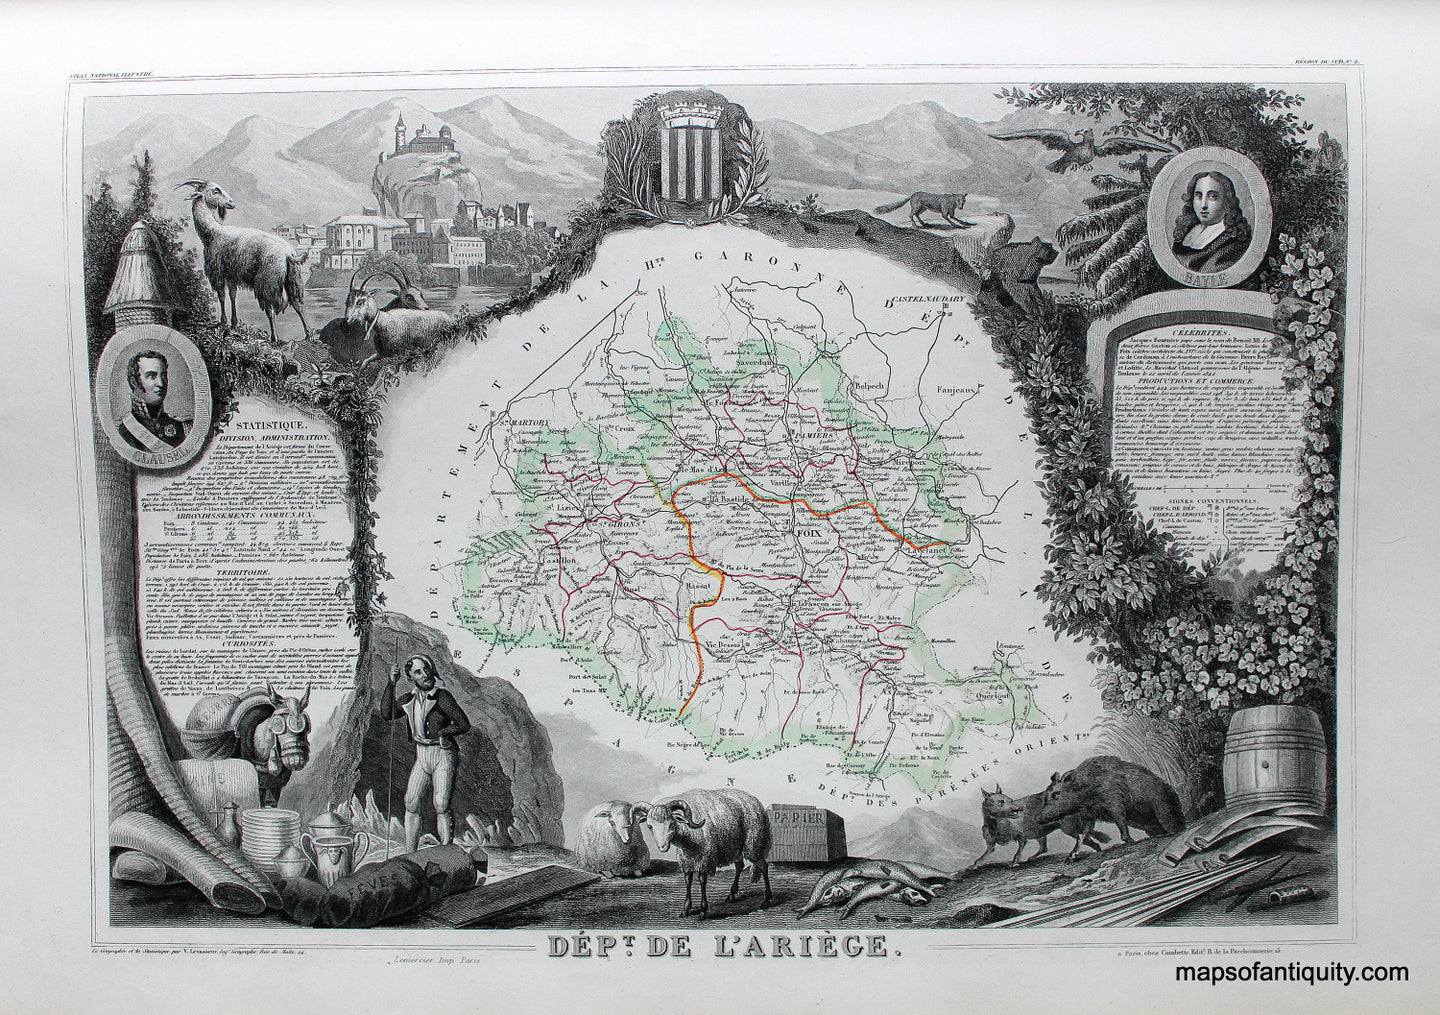 Antique-Hand-Colored-Map-Dept.-de-L'Ariege.-Europe-France-1851-Levasseur-Maps-Of-Antiquity